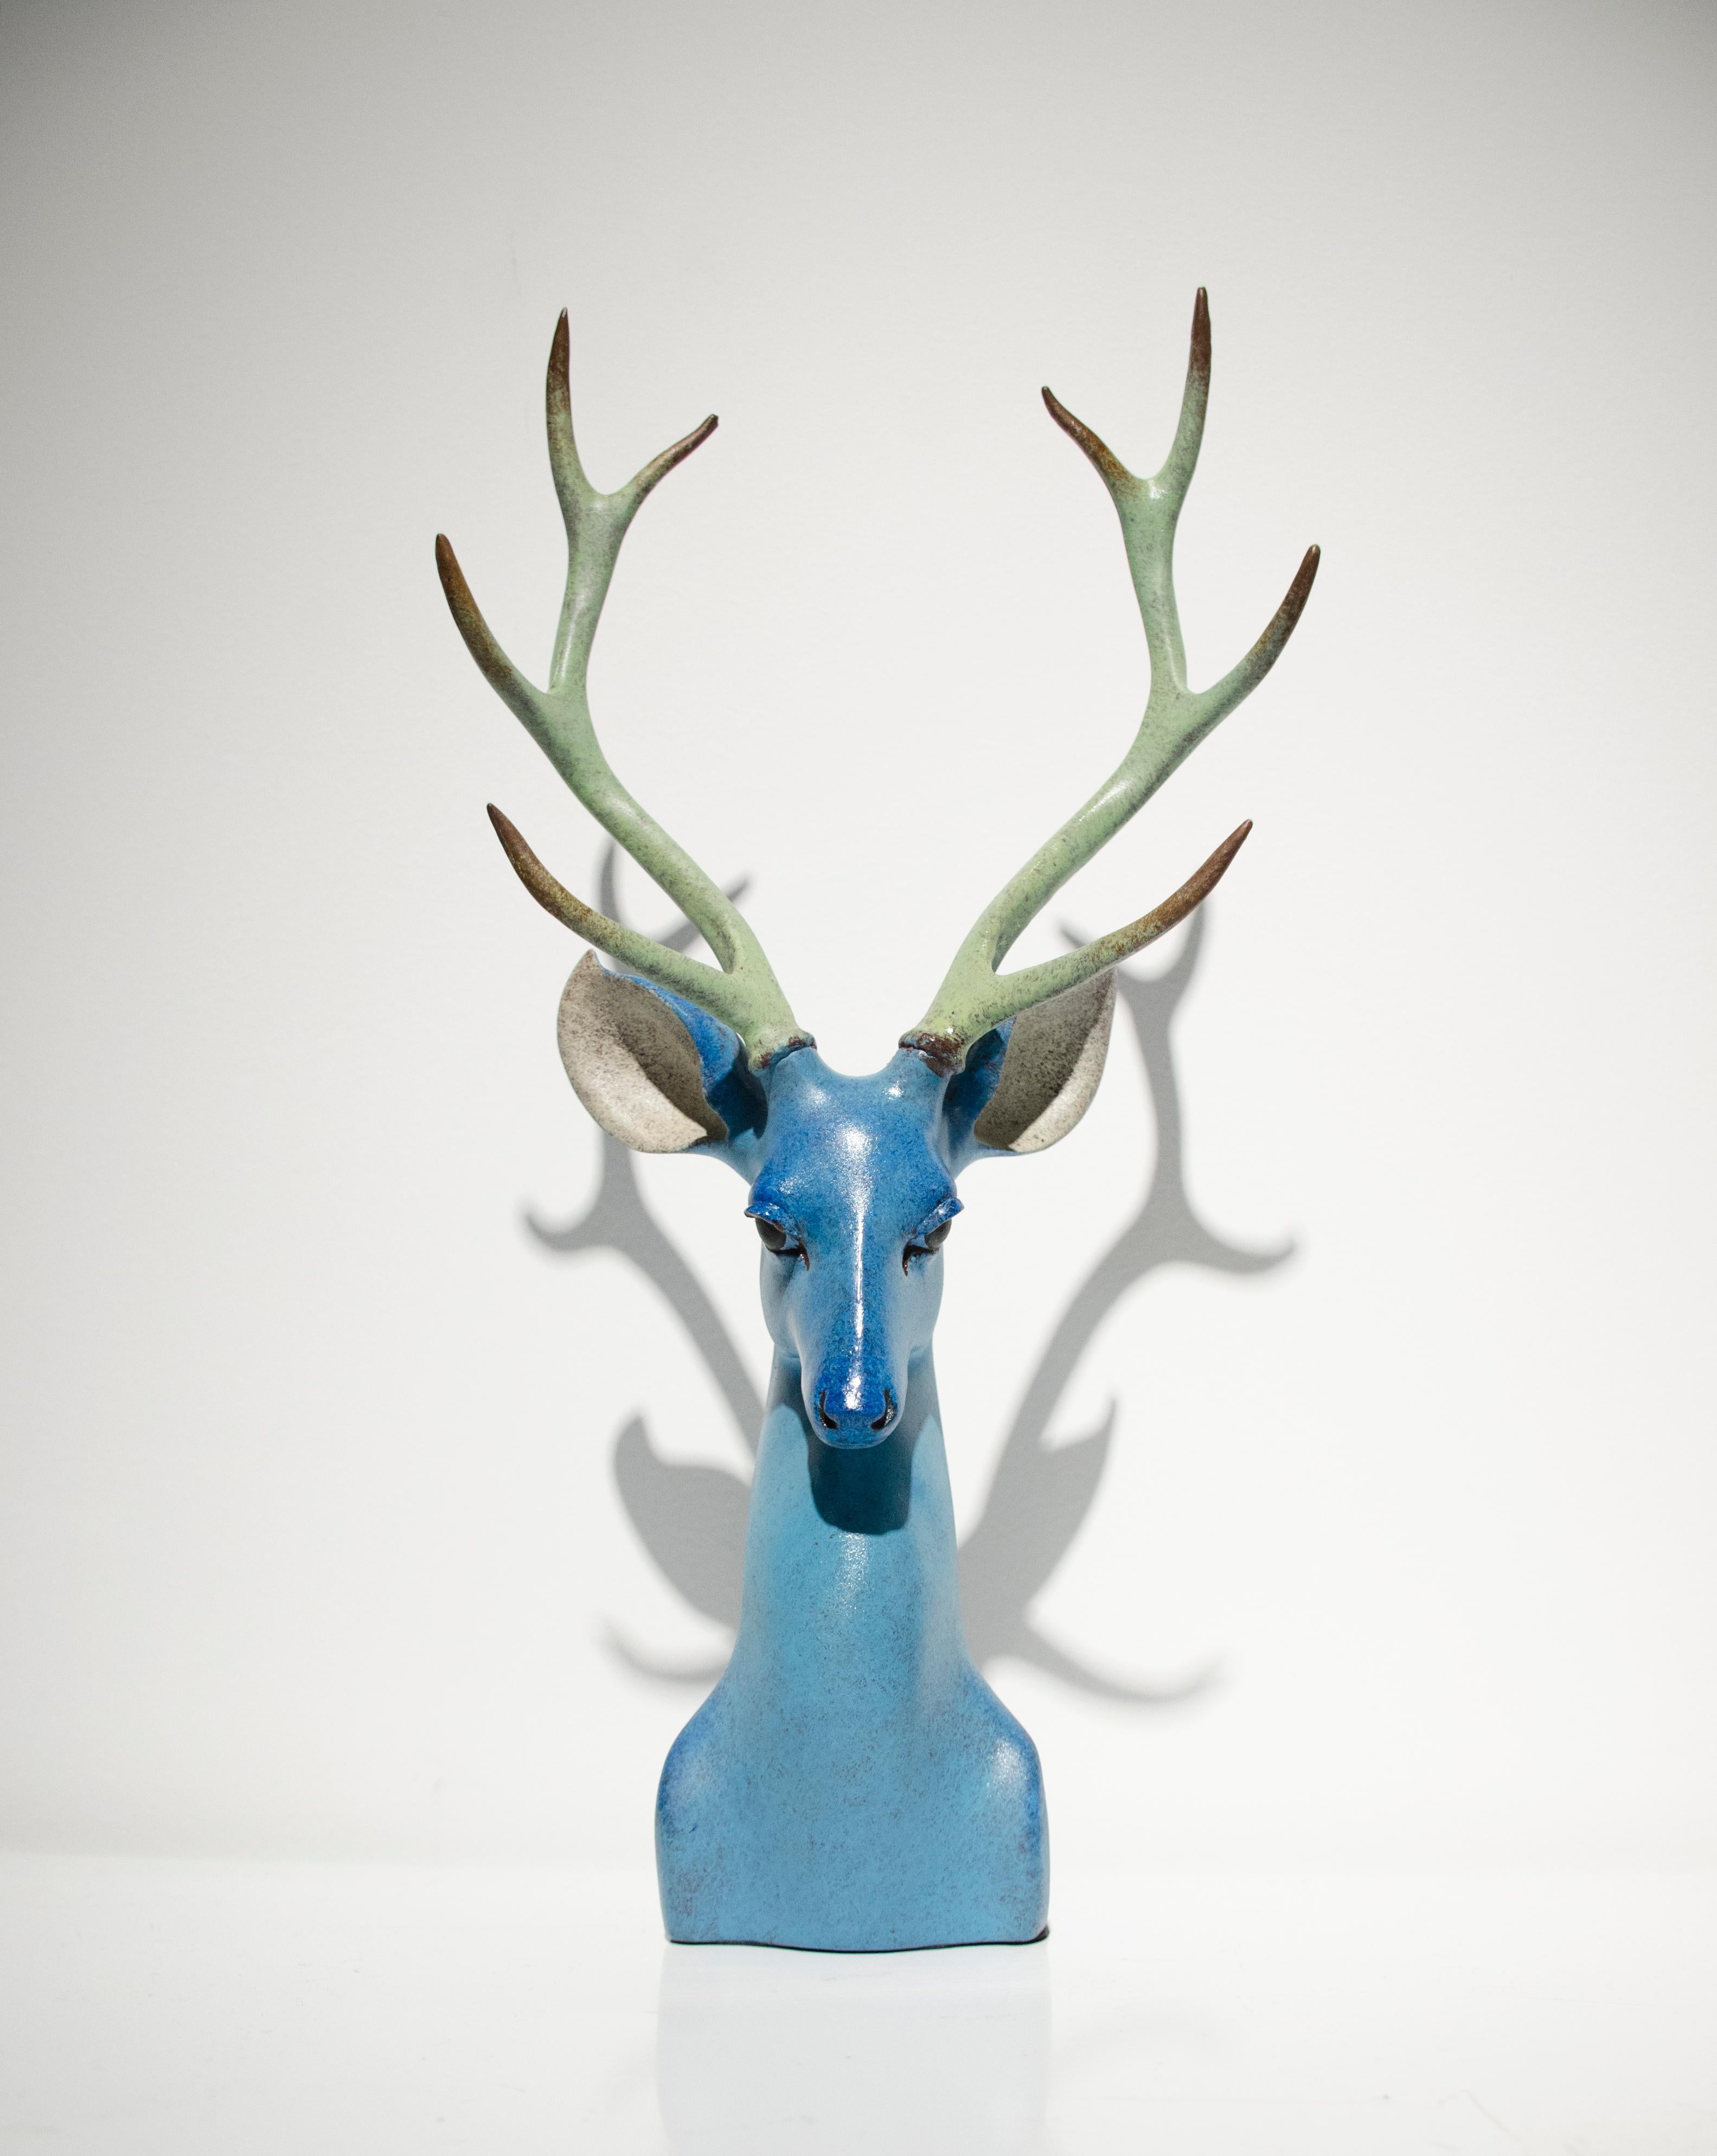 Wang Dapeng  Figurative Sculpture - Contemporary Animal Sculpture by Wang Dapeng-  Green-Blue Forest